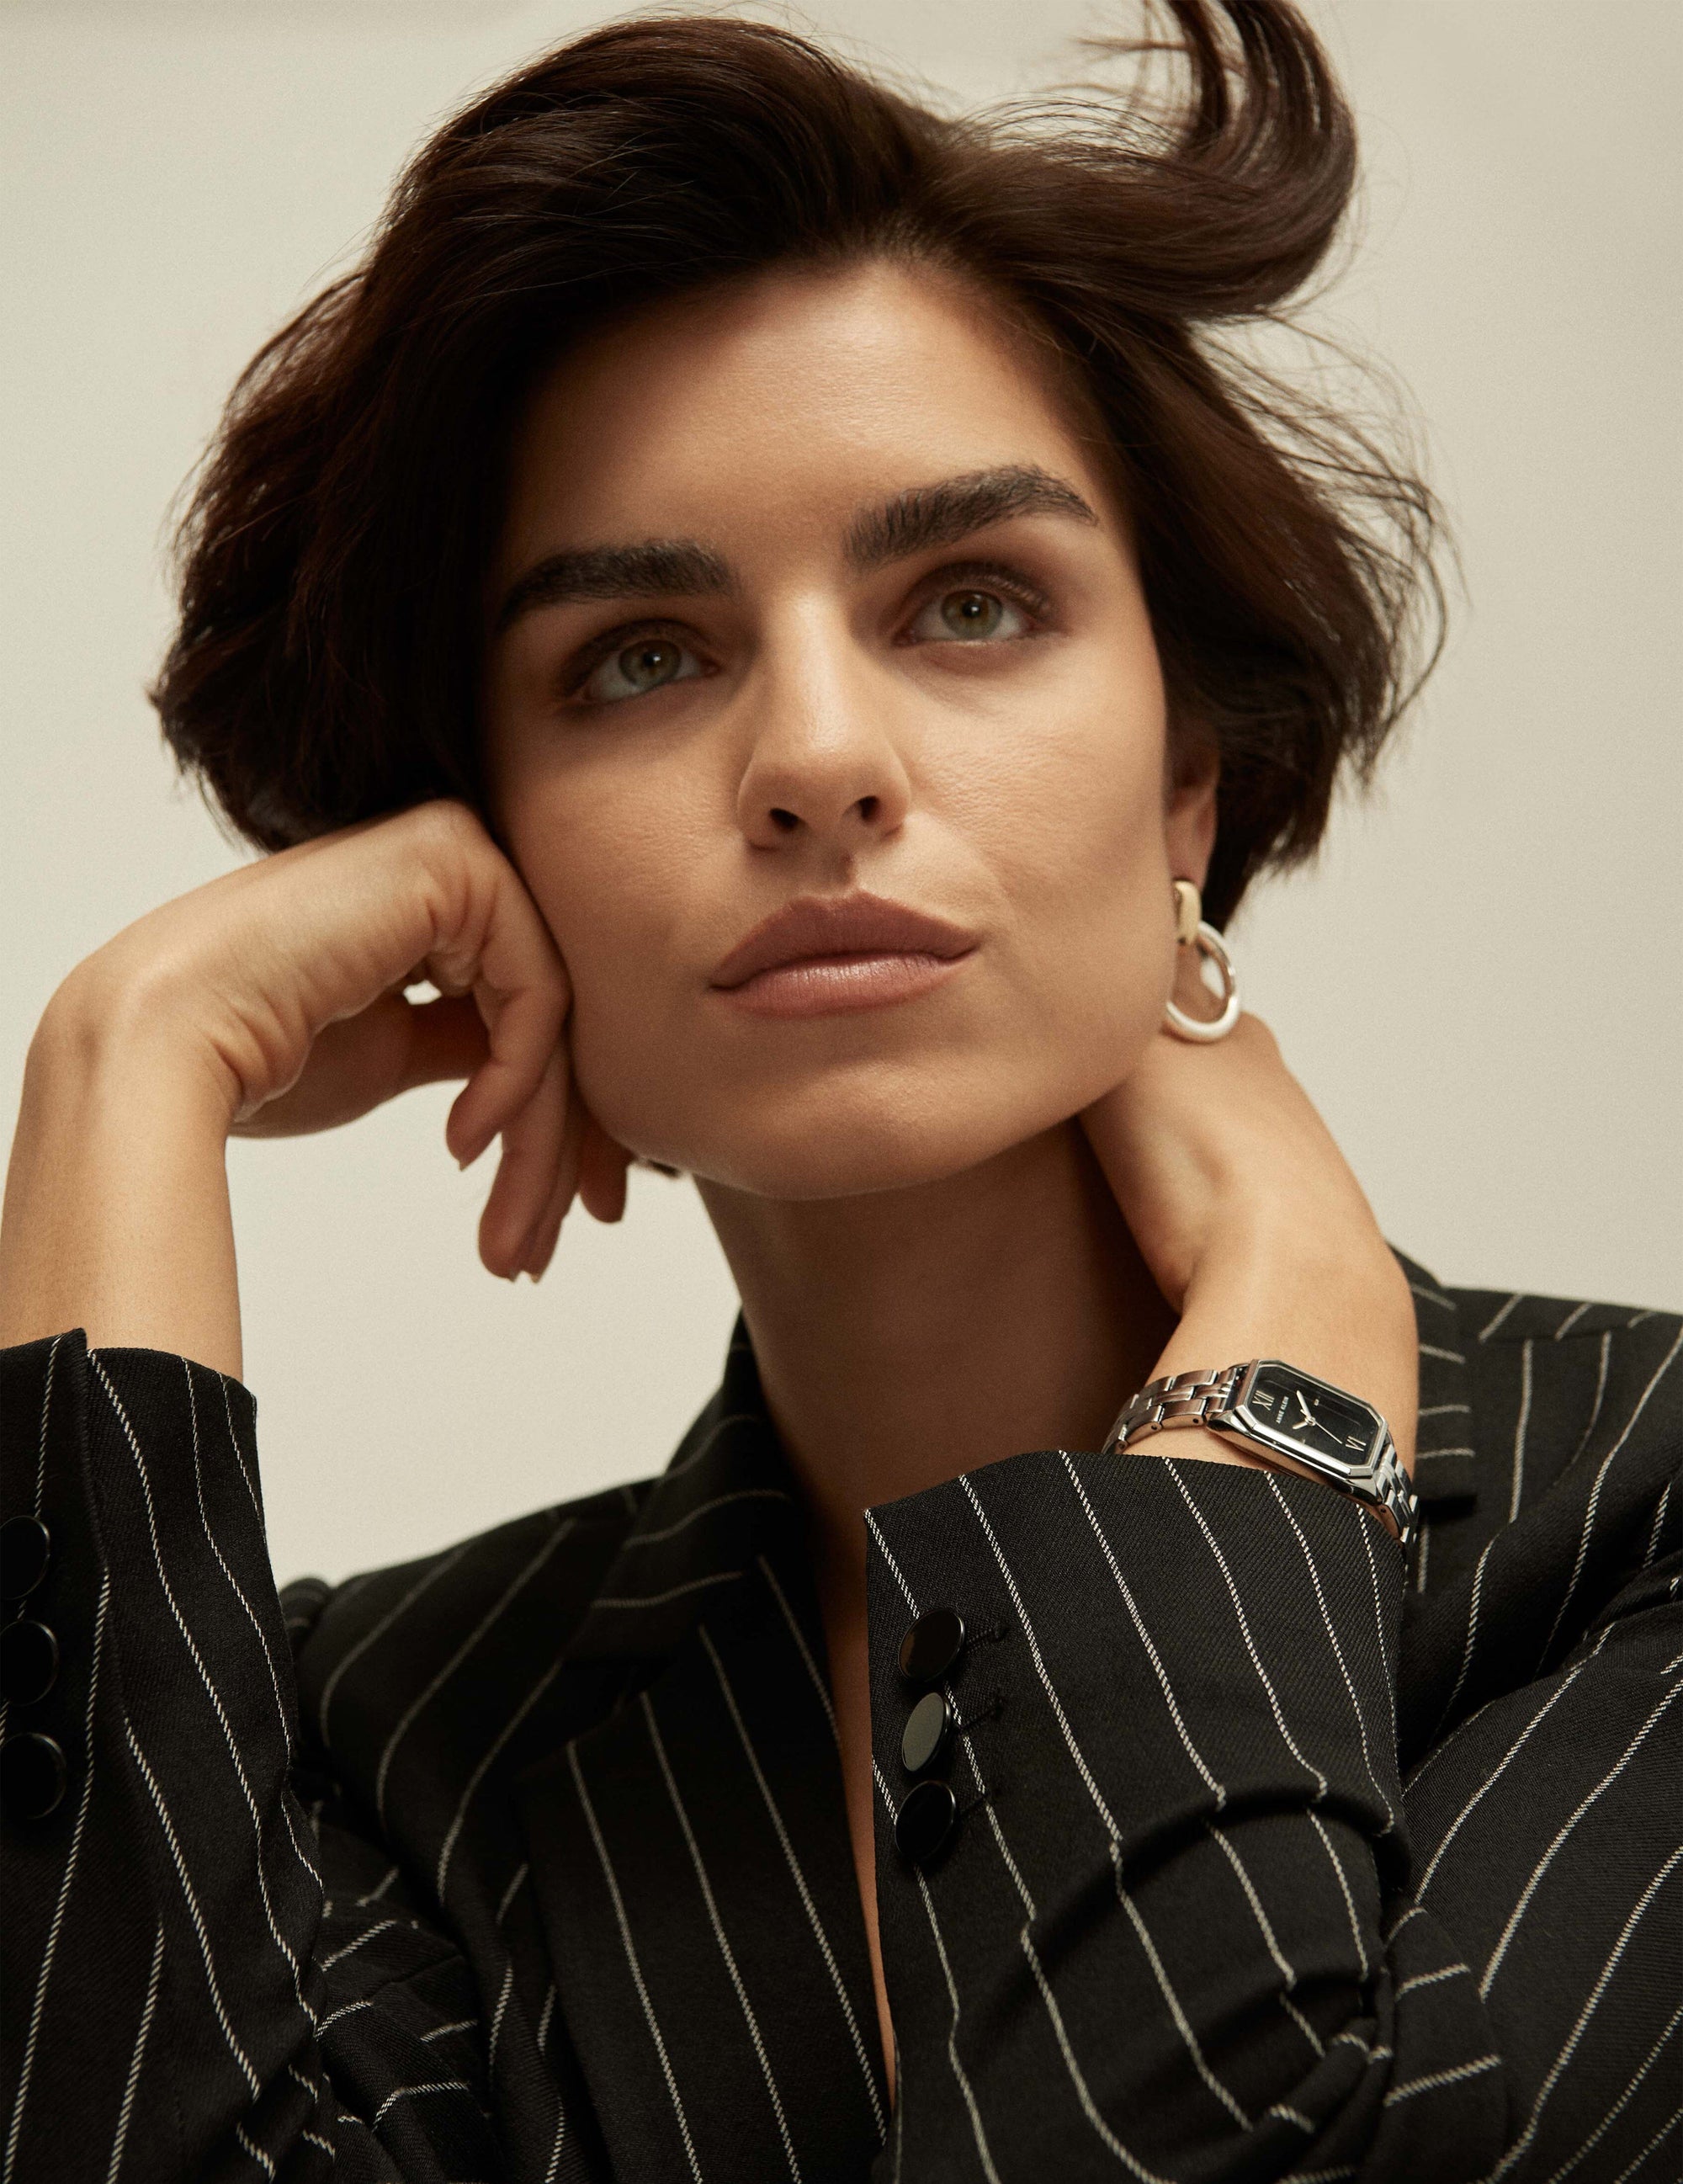  Anne Klein Women's Bracelet Watch : Clothing, Shoes & Jewelry